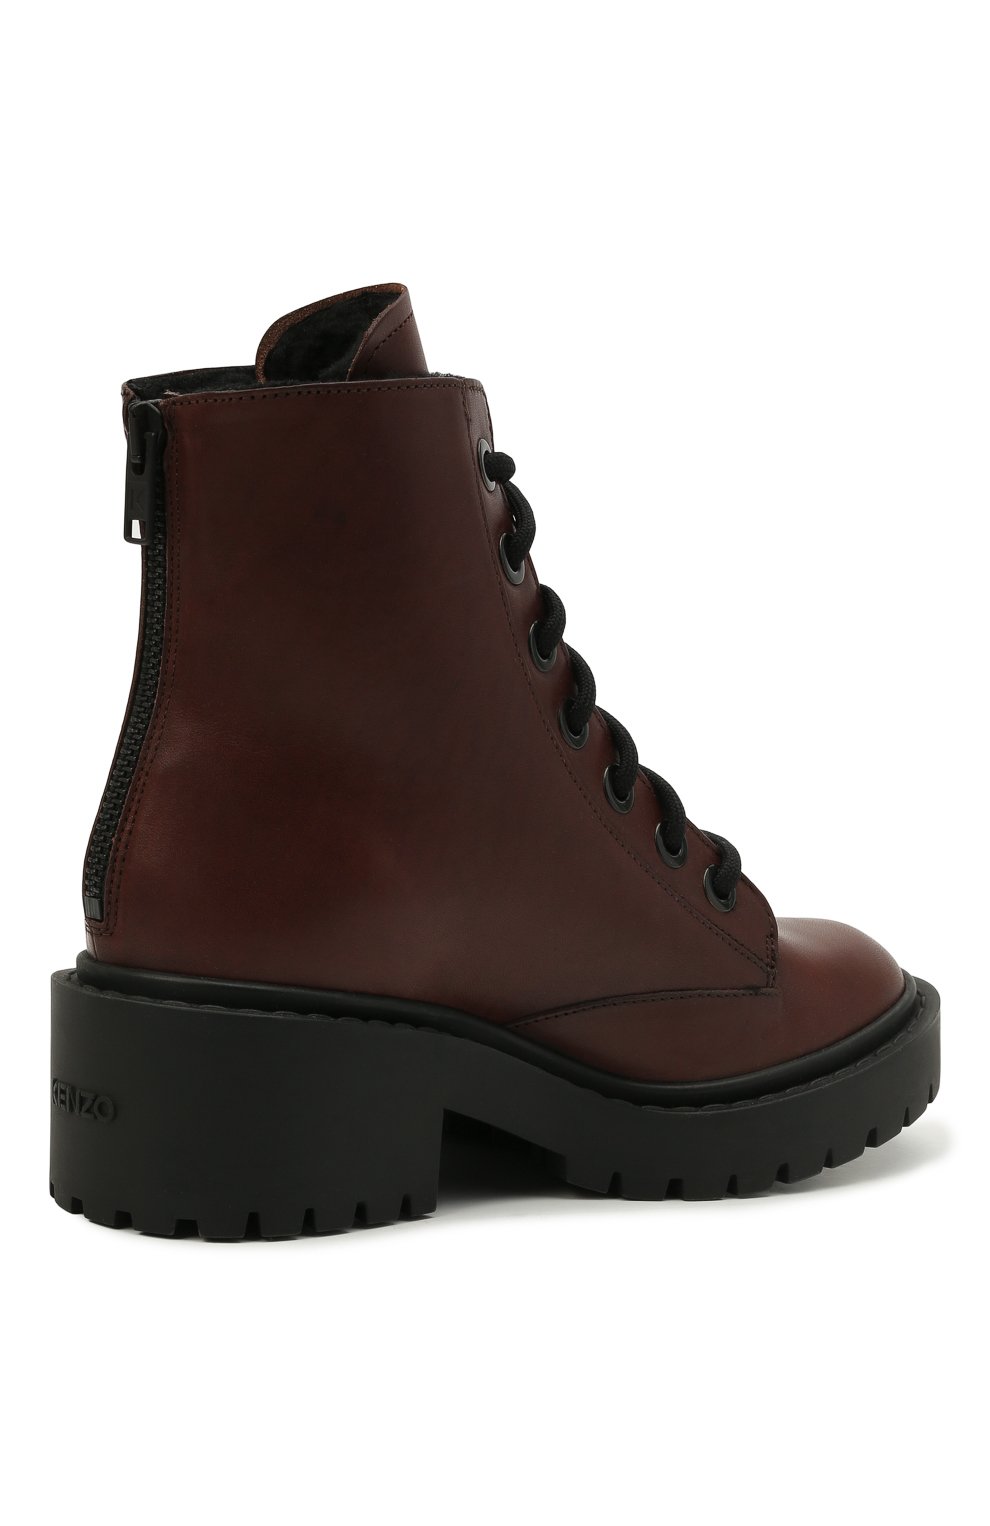 Кожаные ботинки Pike Kenzo FB62BT341L55, цвет коричневый, размер 38 - фото 3